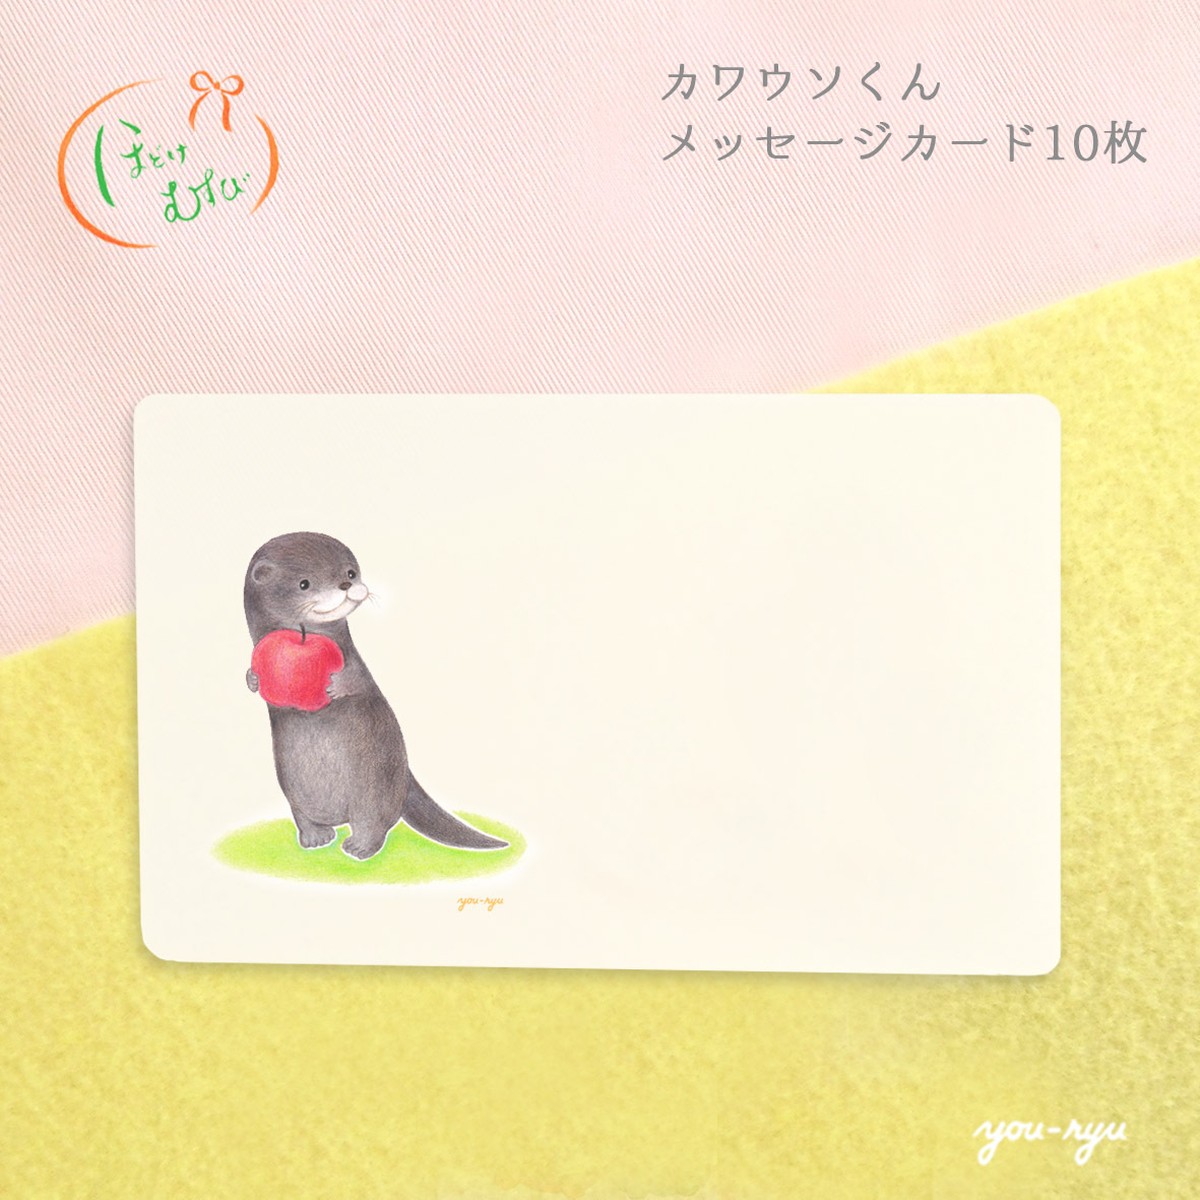 一緒に食べる カワウソくんのメッセージカード 10枚入 アートのおみせ ほどけむすび Hodokemusubi